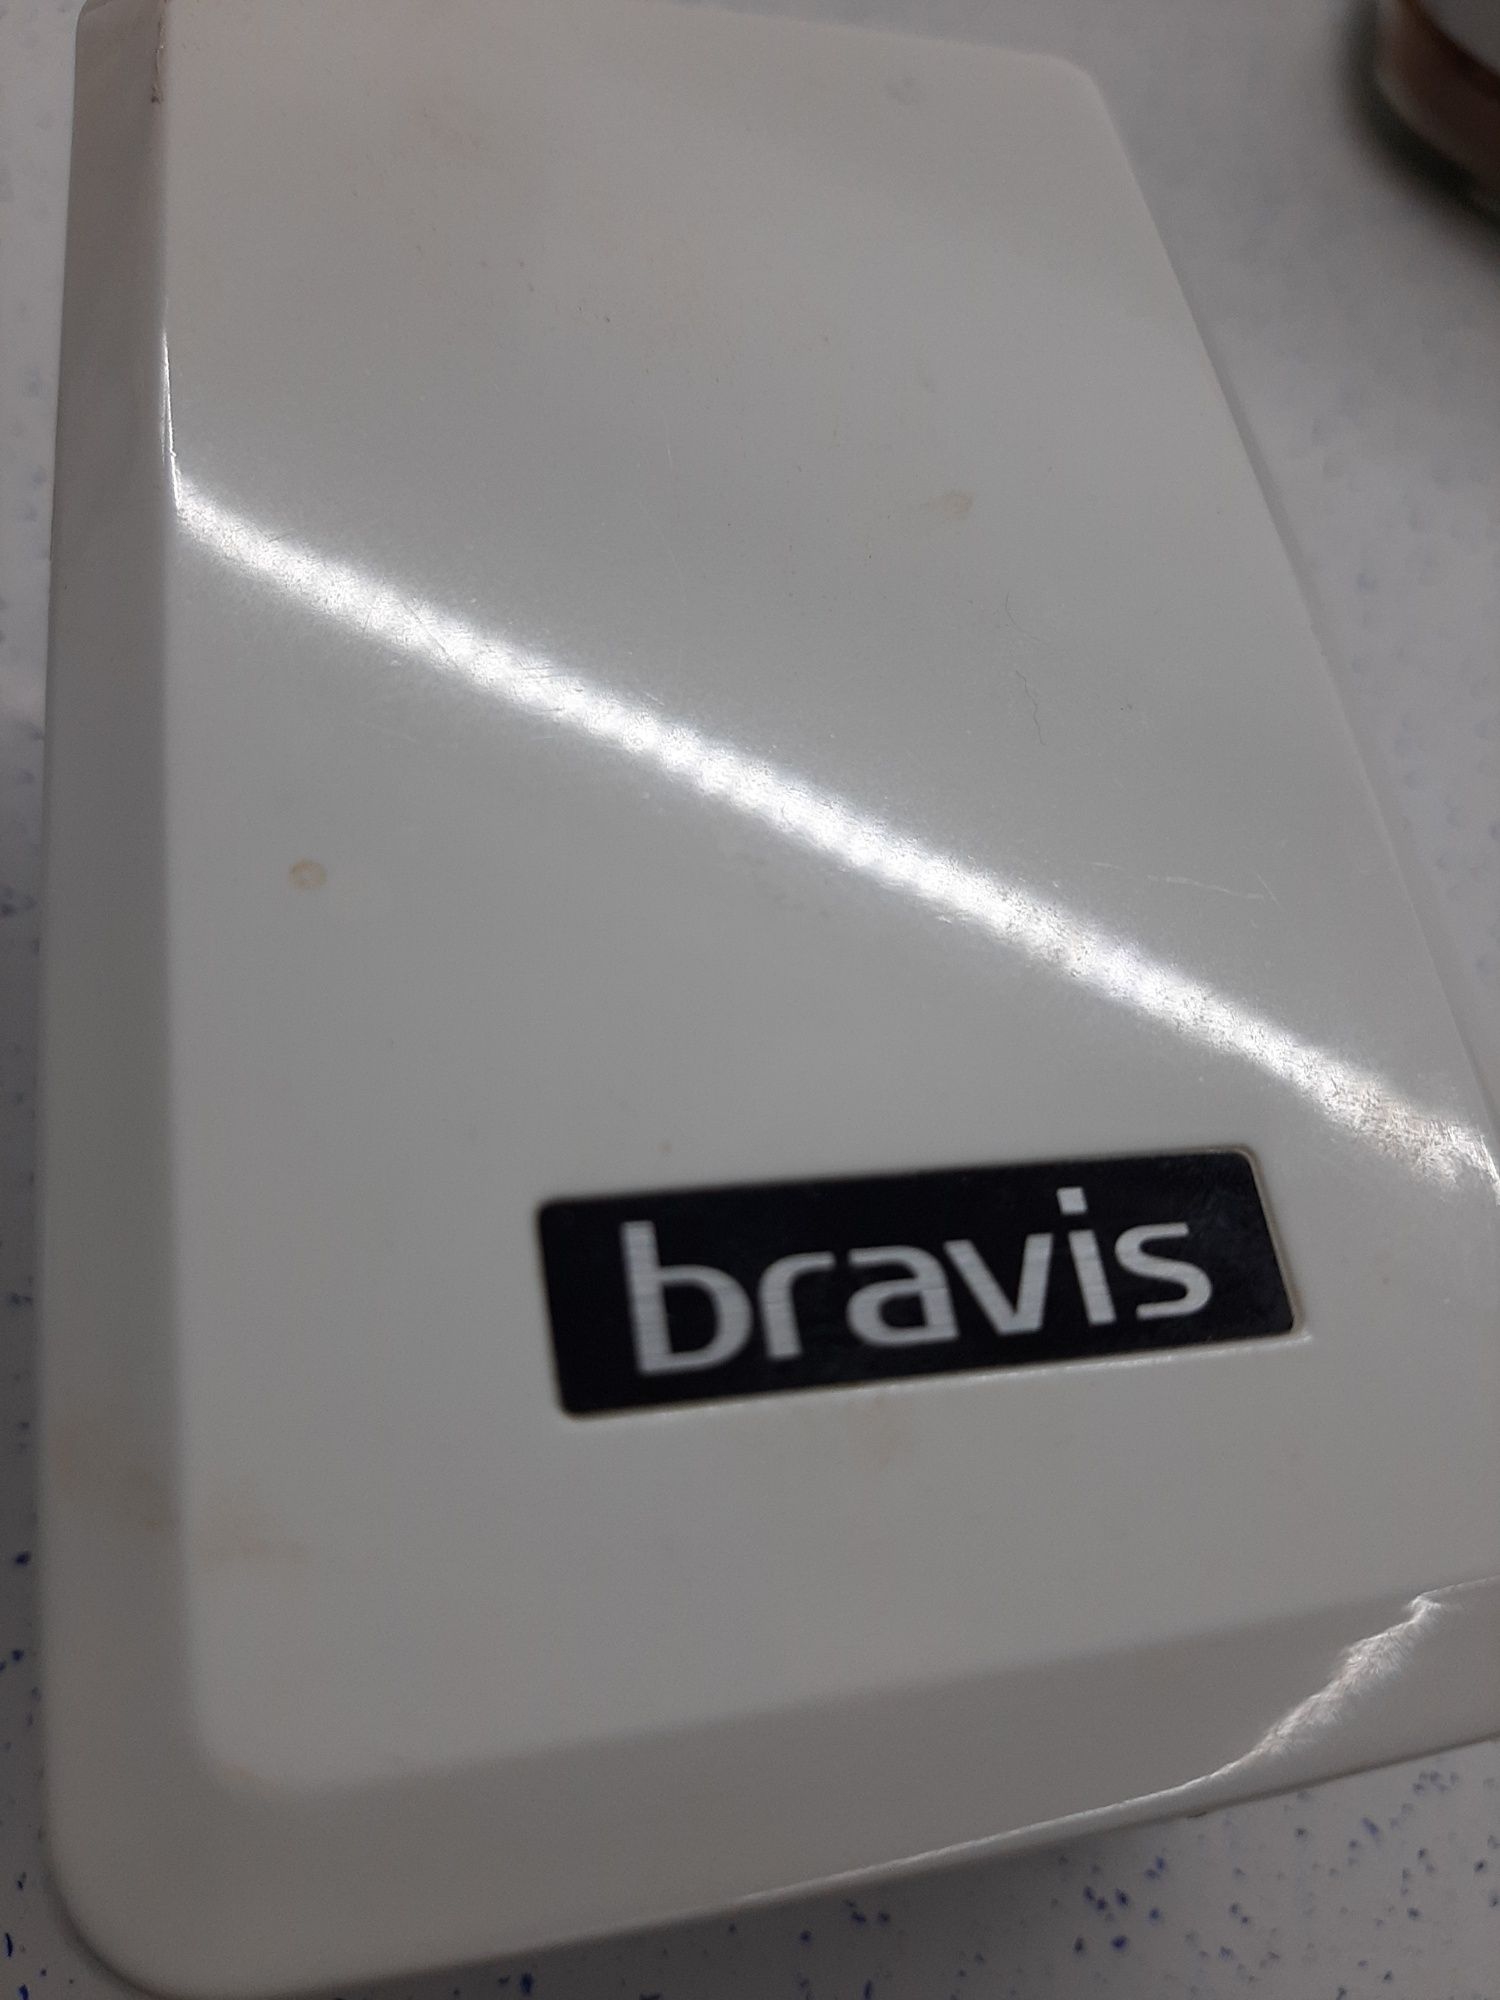 Продам  LED- лампу "bravis". Цвет черно-белый.